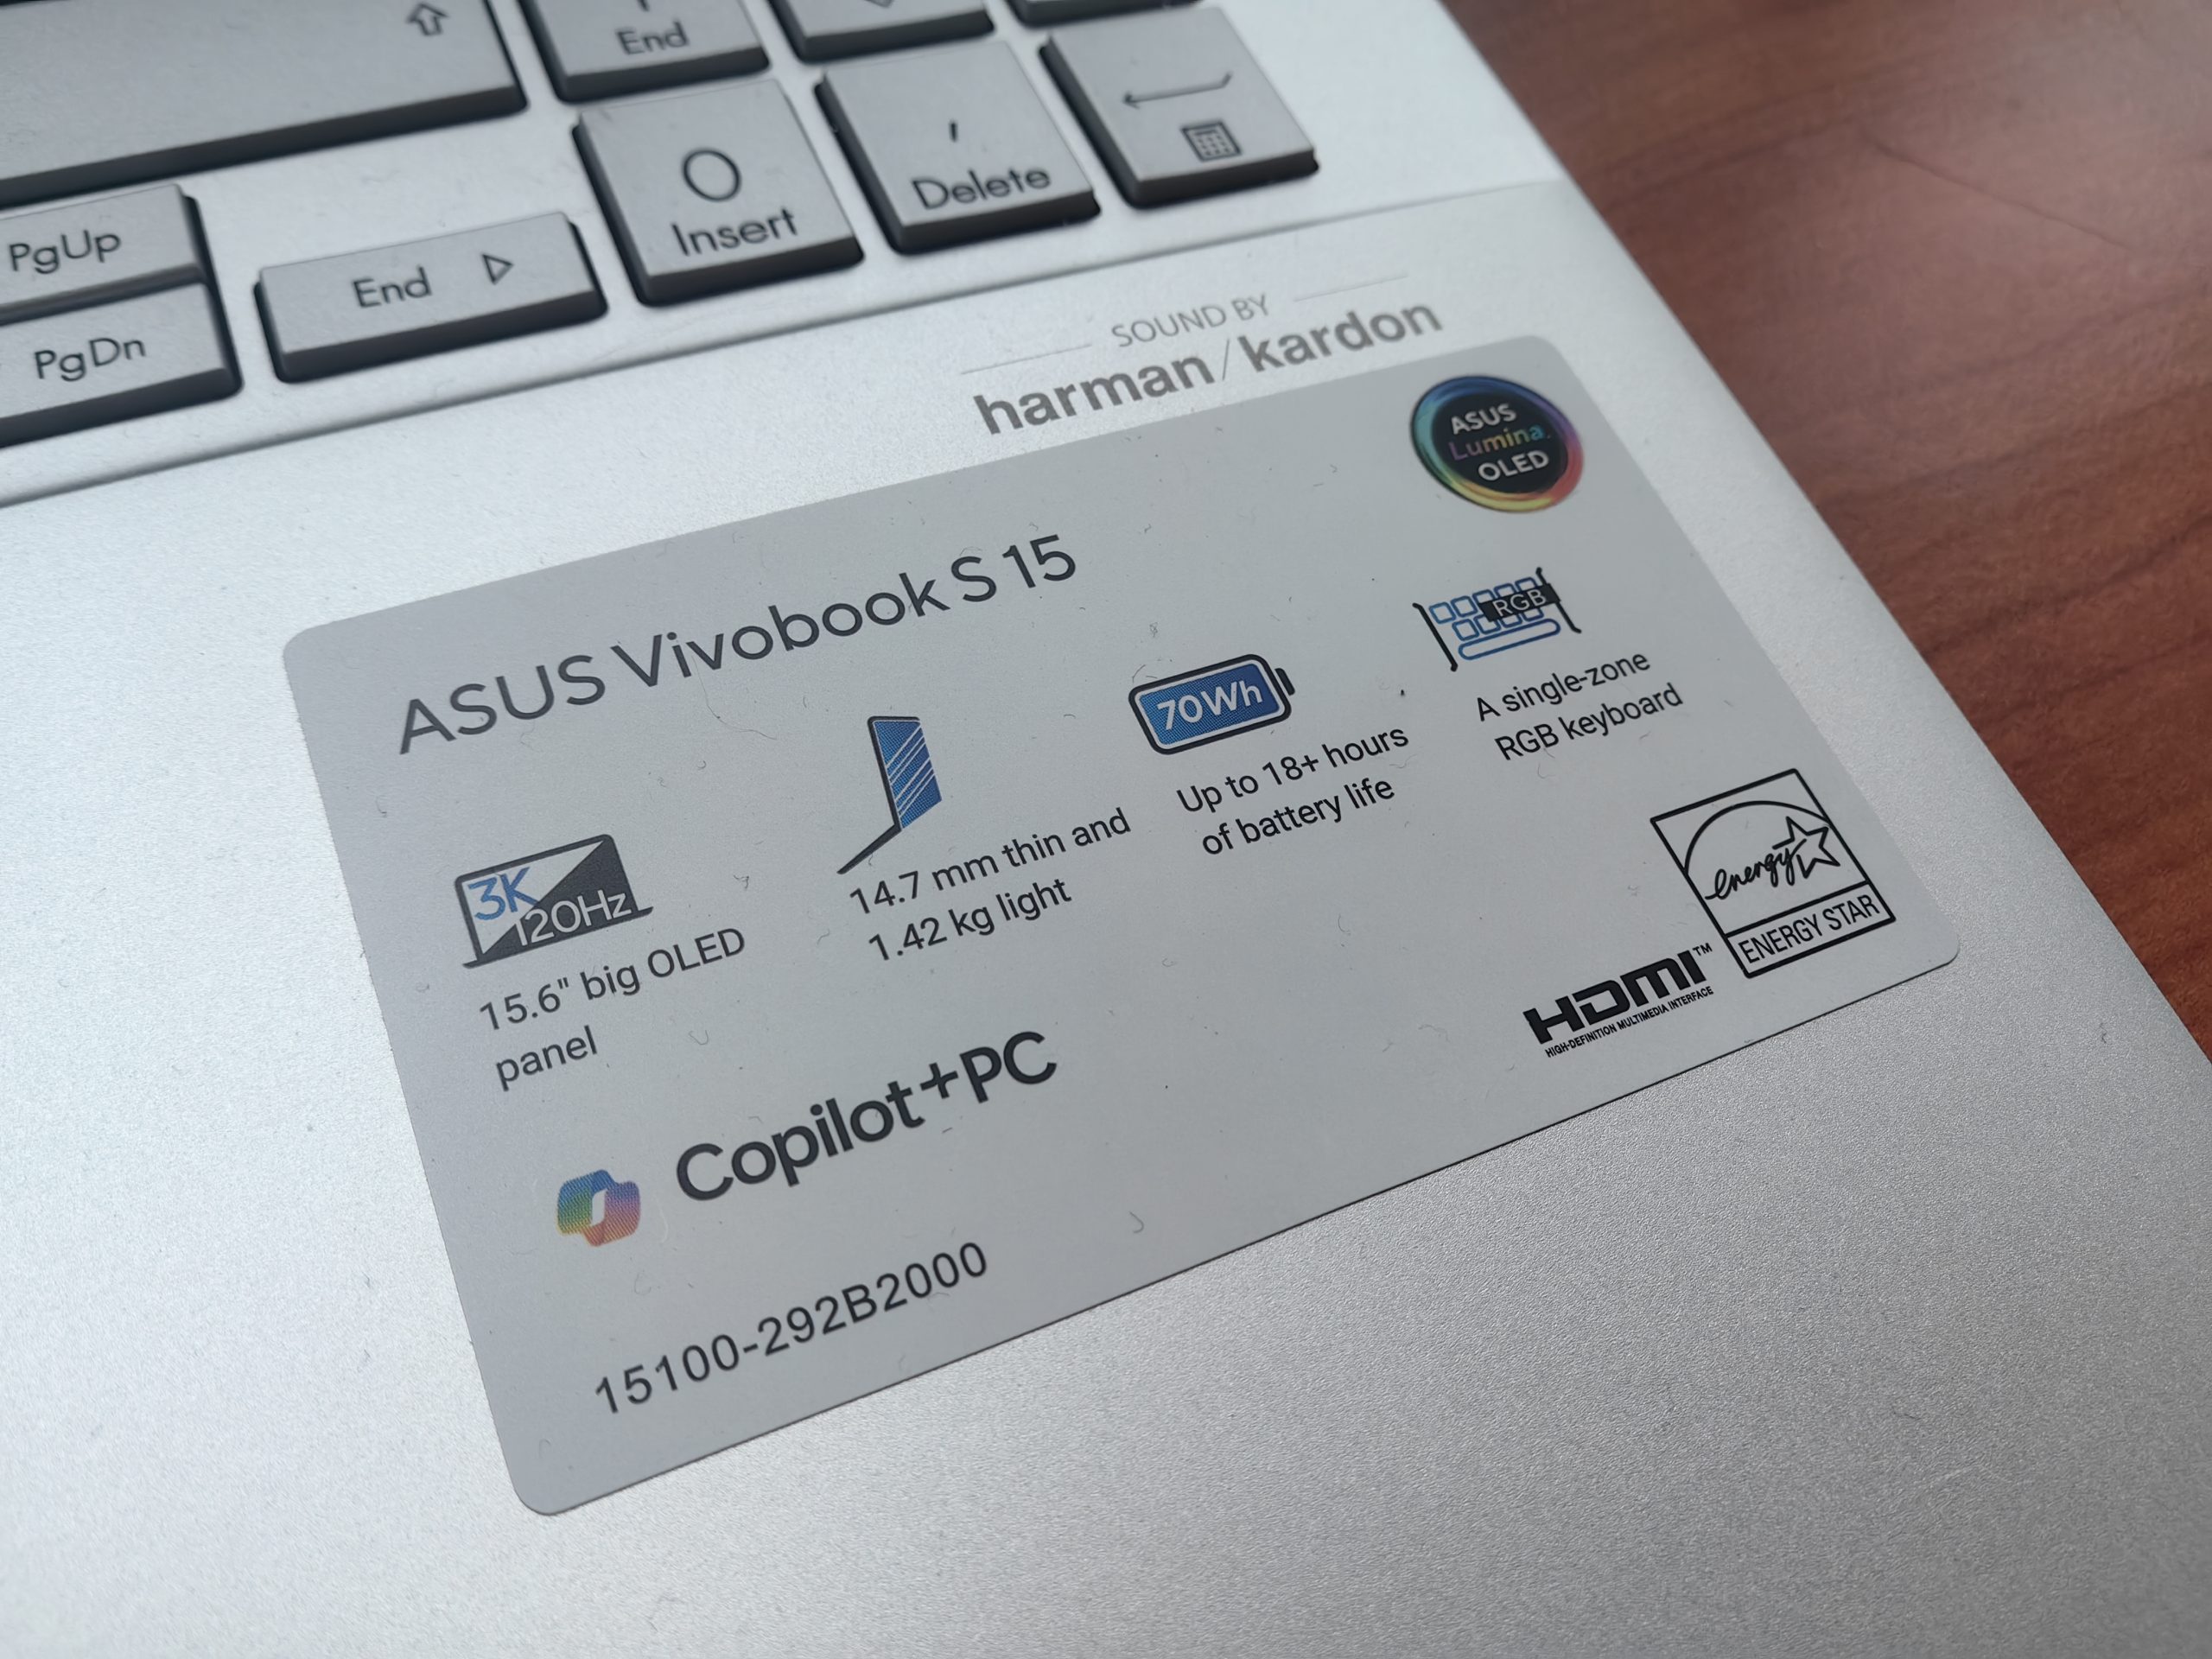 ASUS Vivobook S 15 fa parte della linea Copilot+